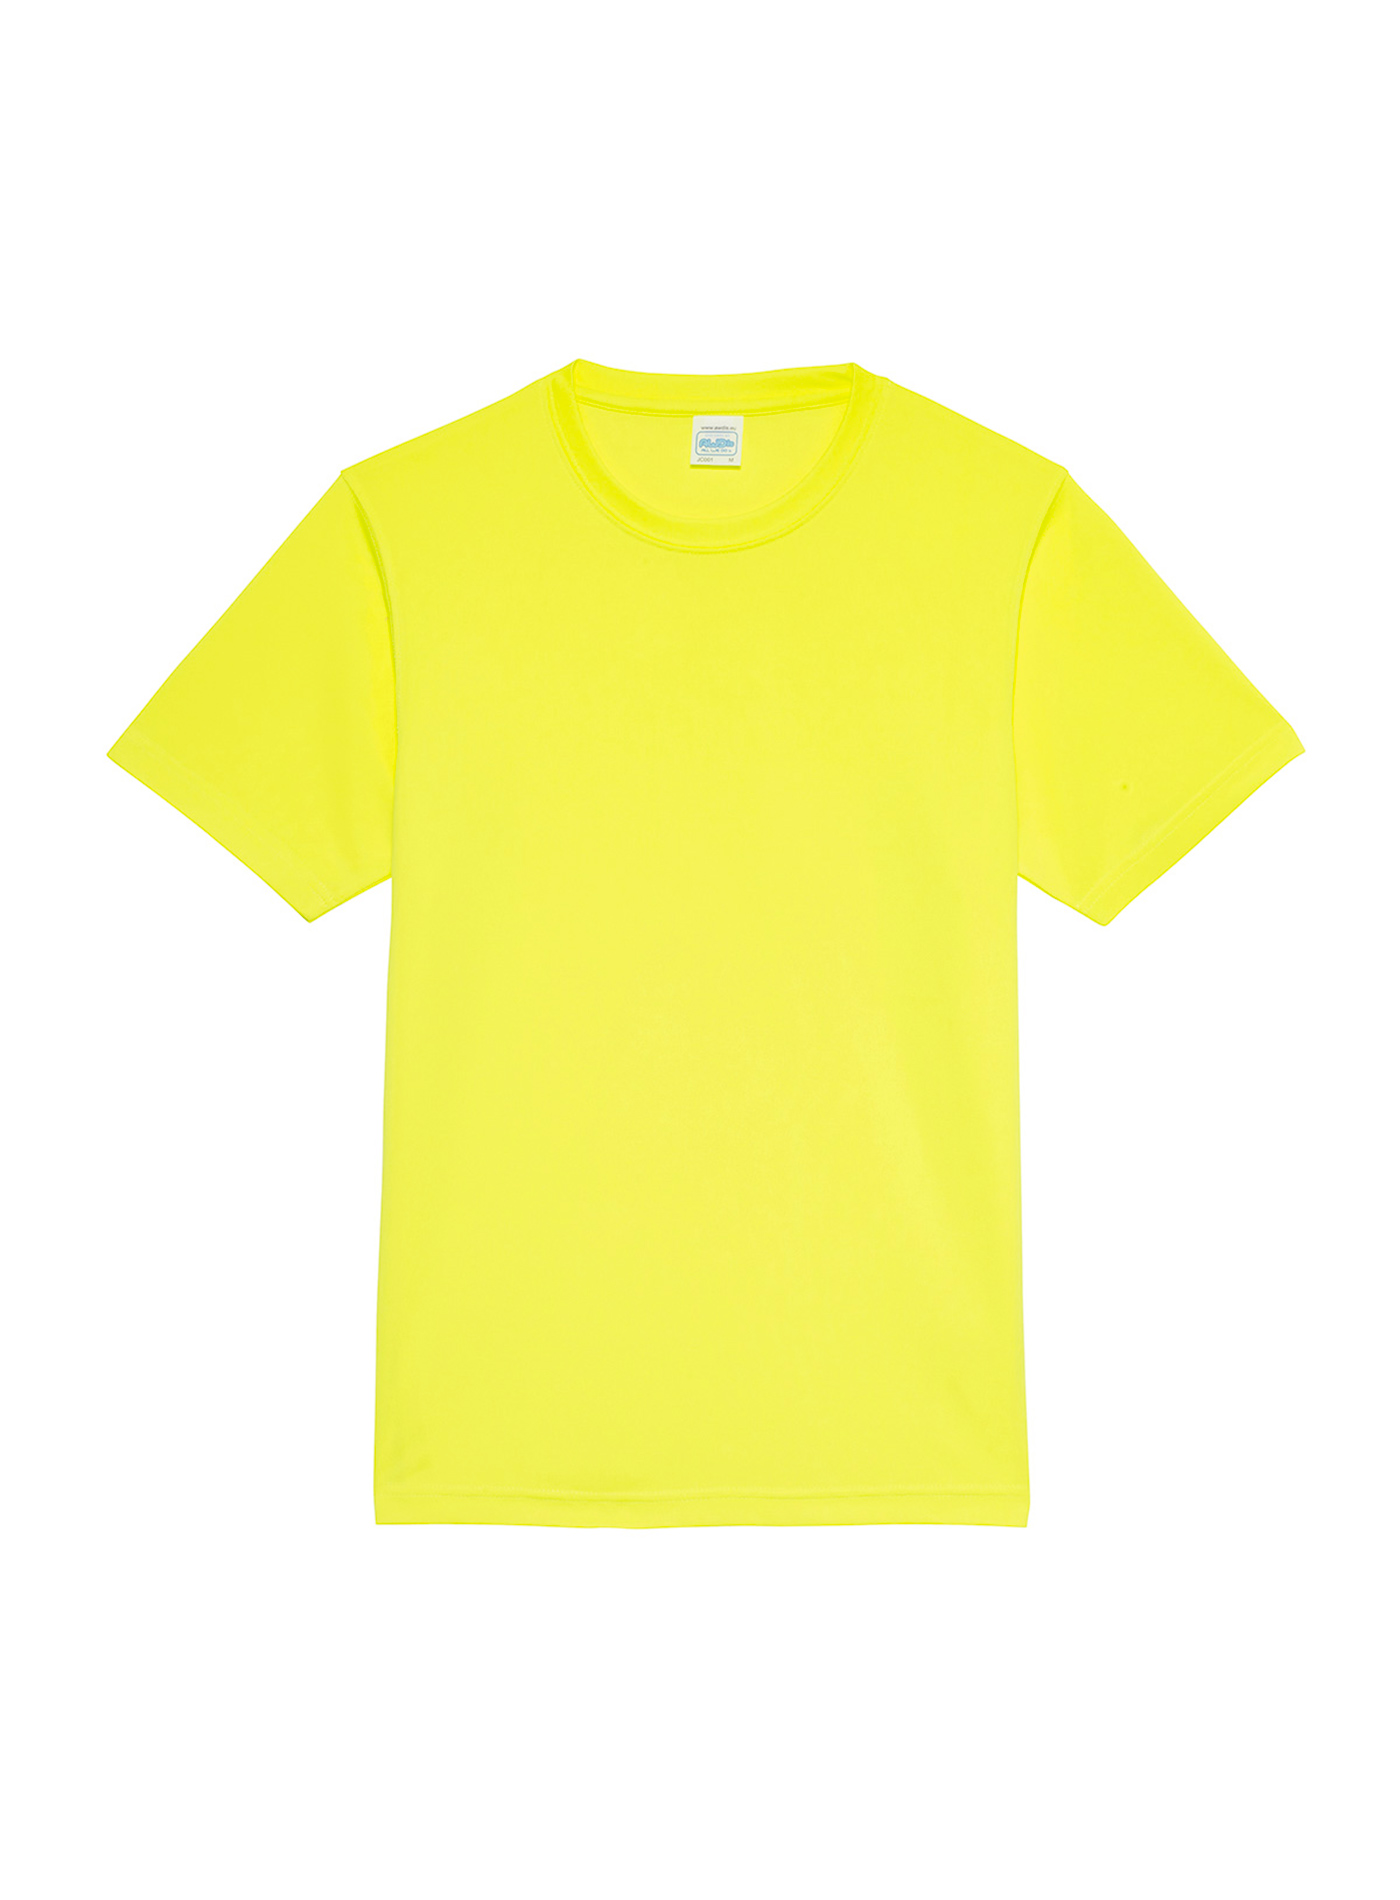 Unisex tričko Neonlight - Neonově žlutá XL